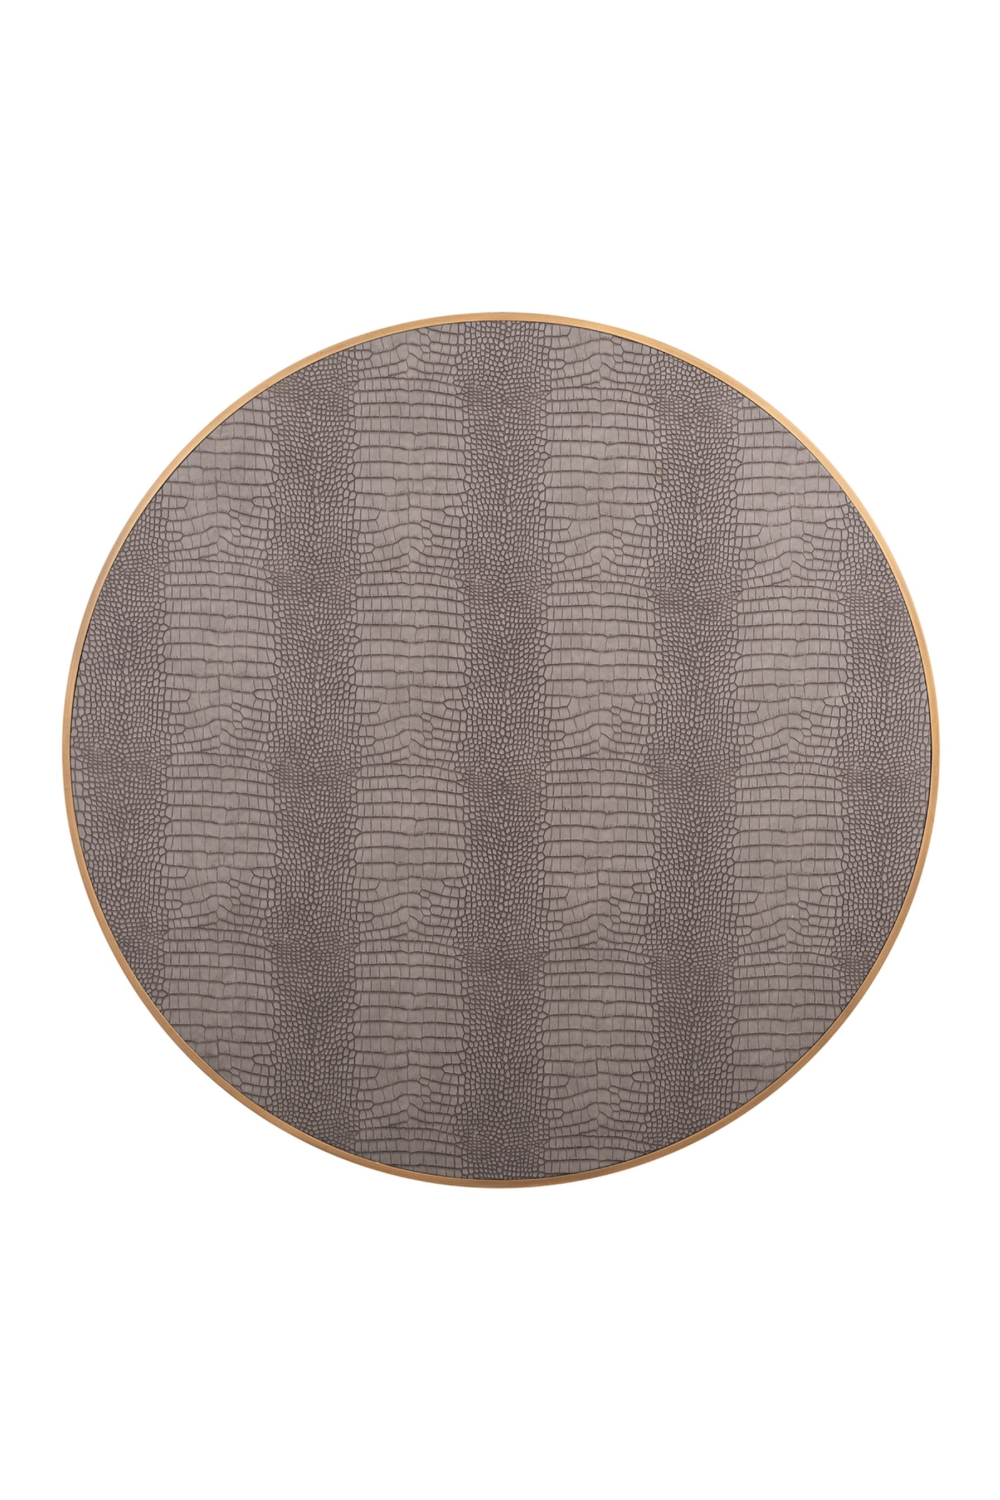 Patterned Leather Coffee Table | OROA Classio | Oroatrade.com